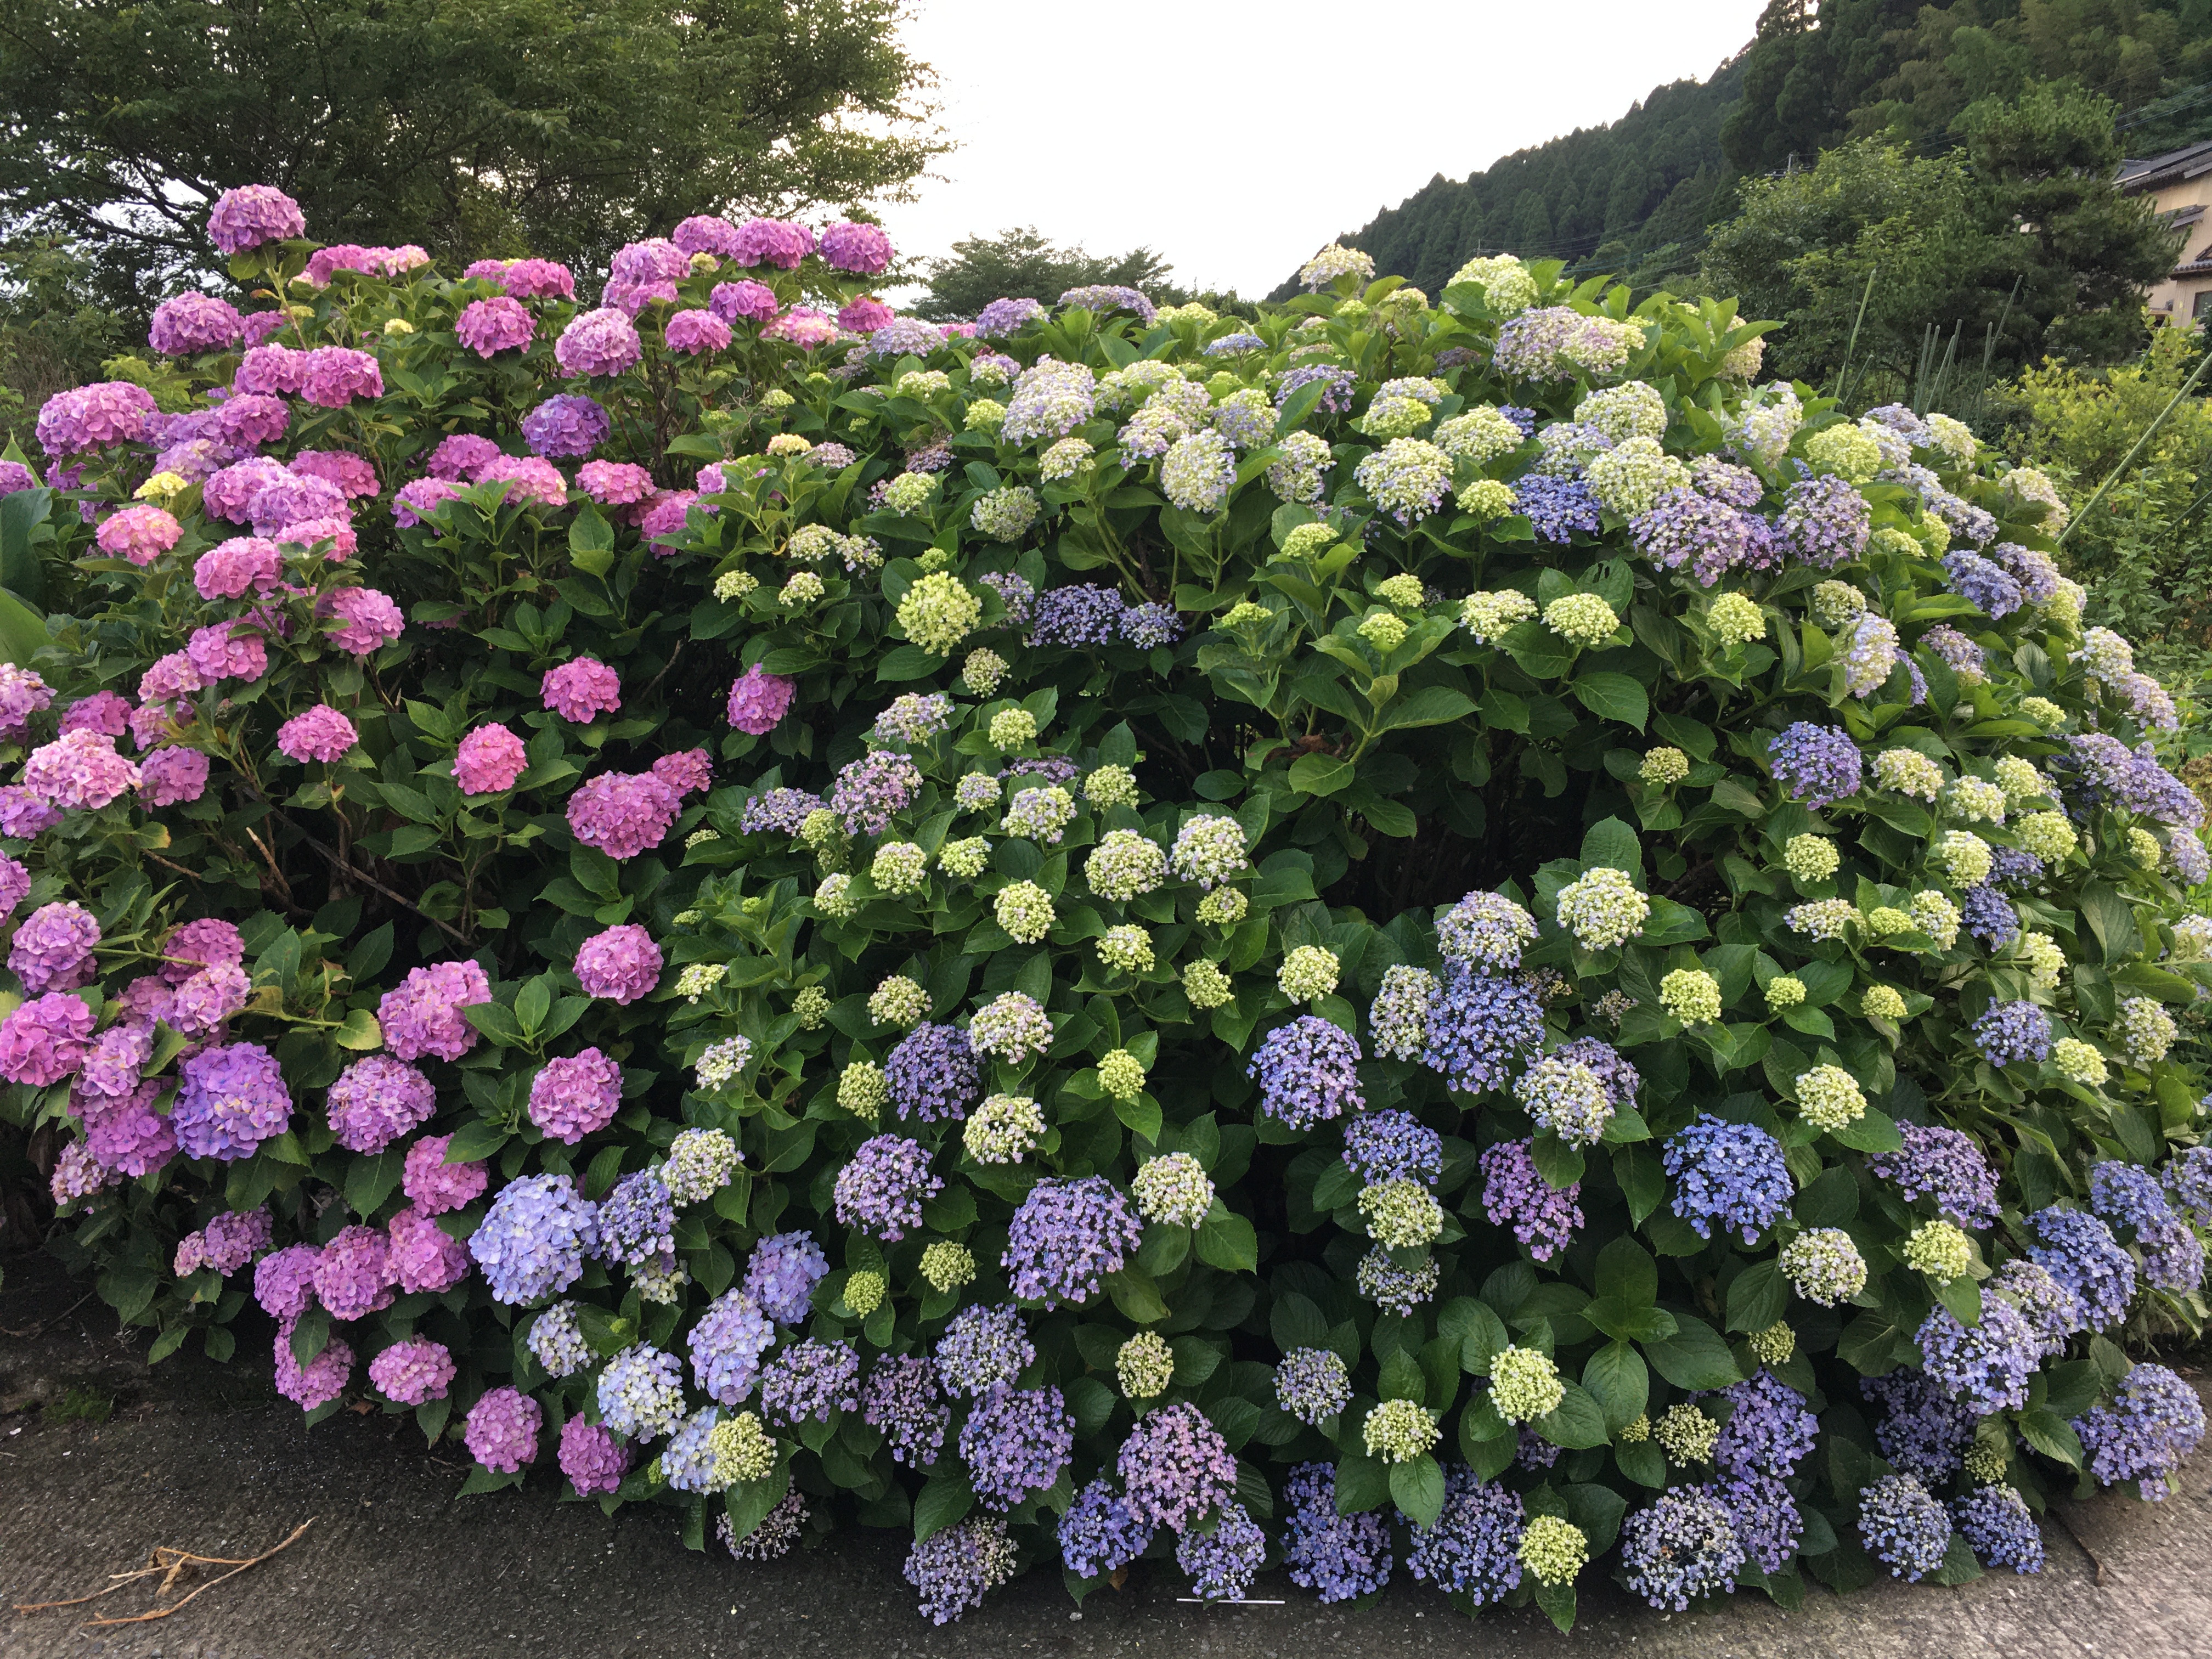 Rainy Season Flowers In Japan 道の駅 阿蘇